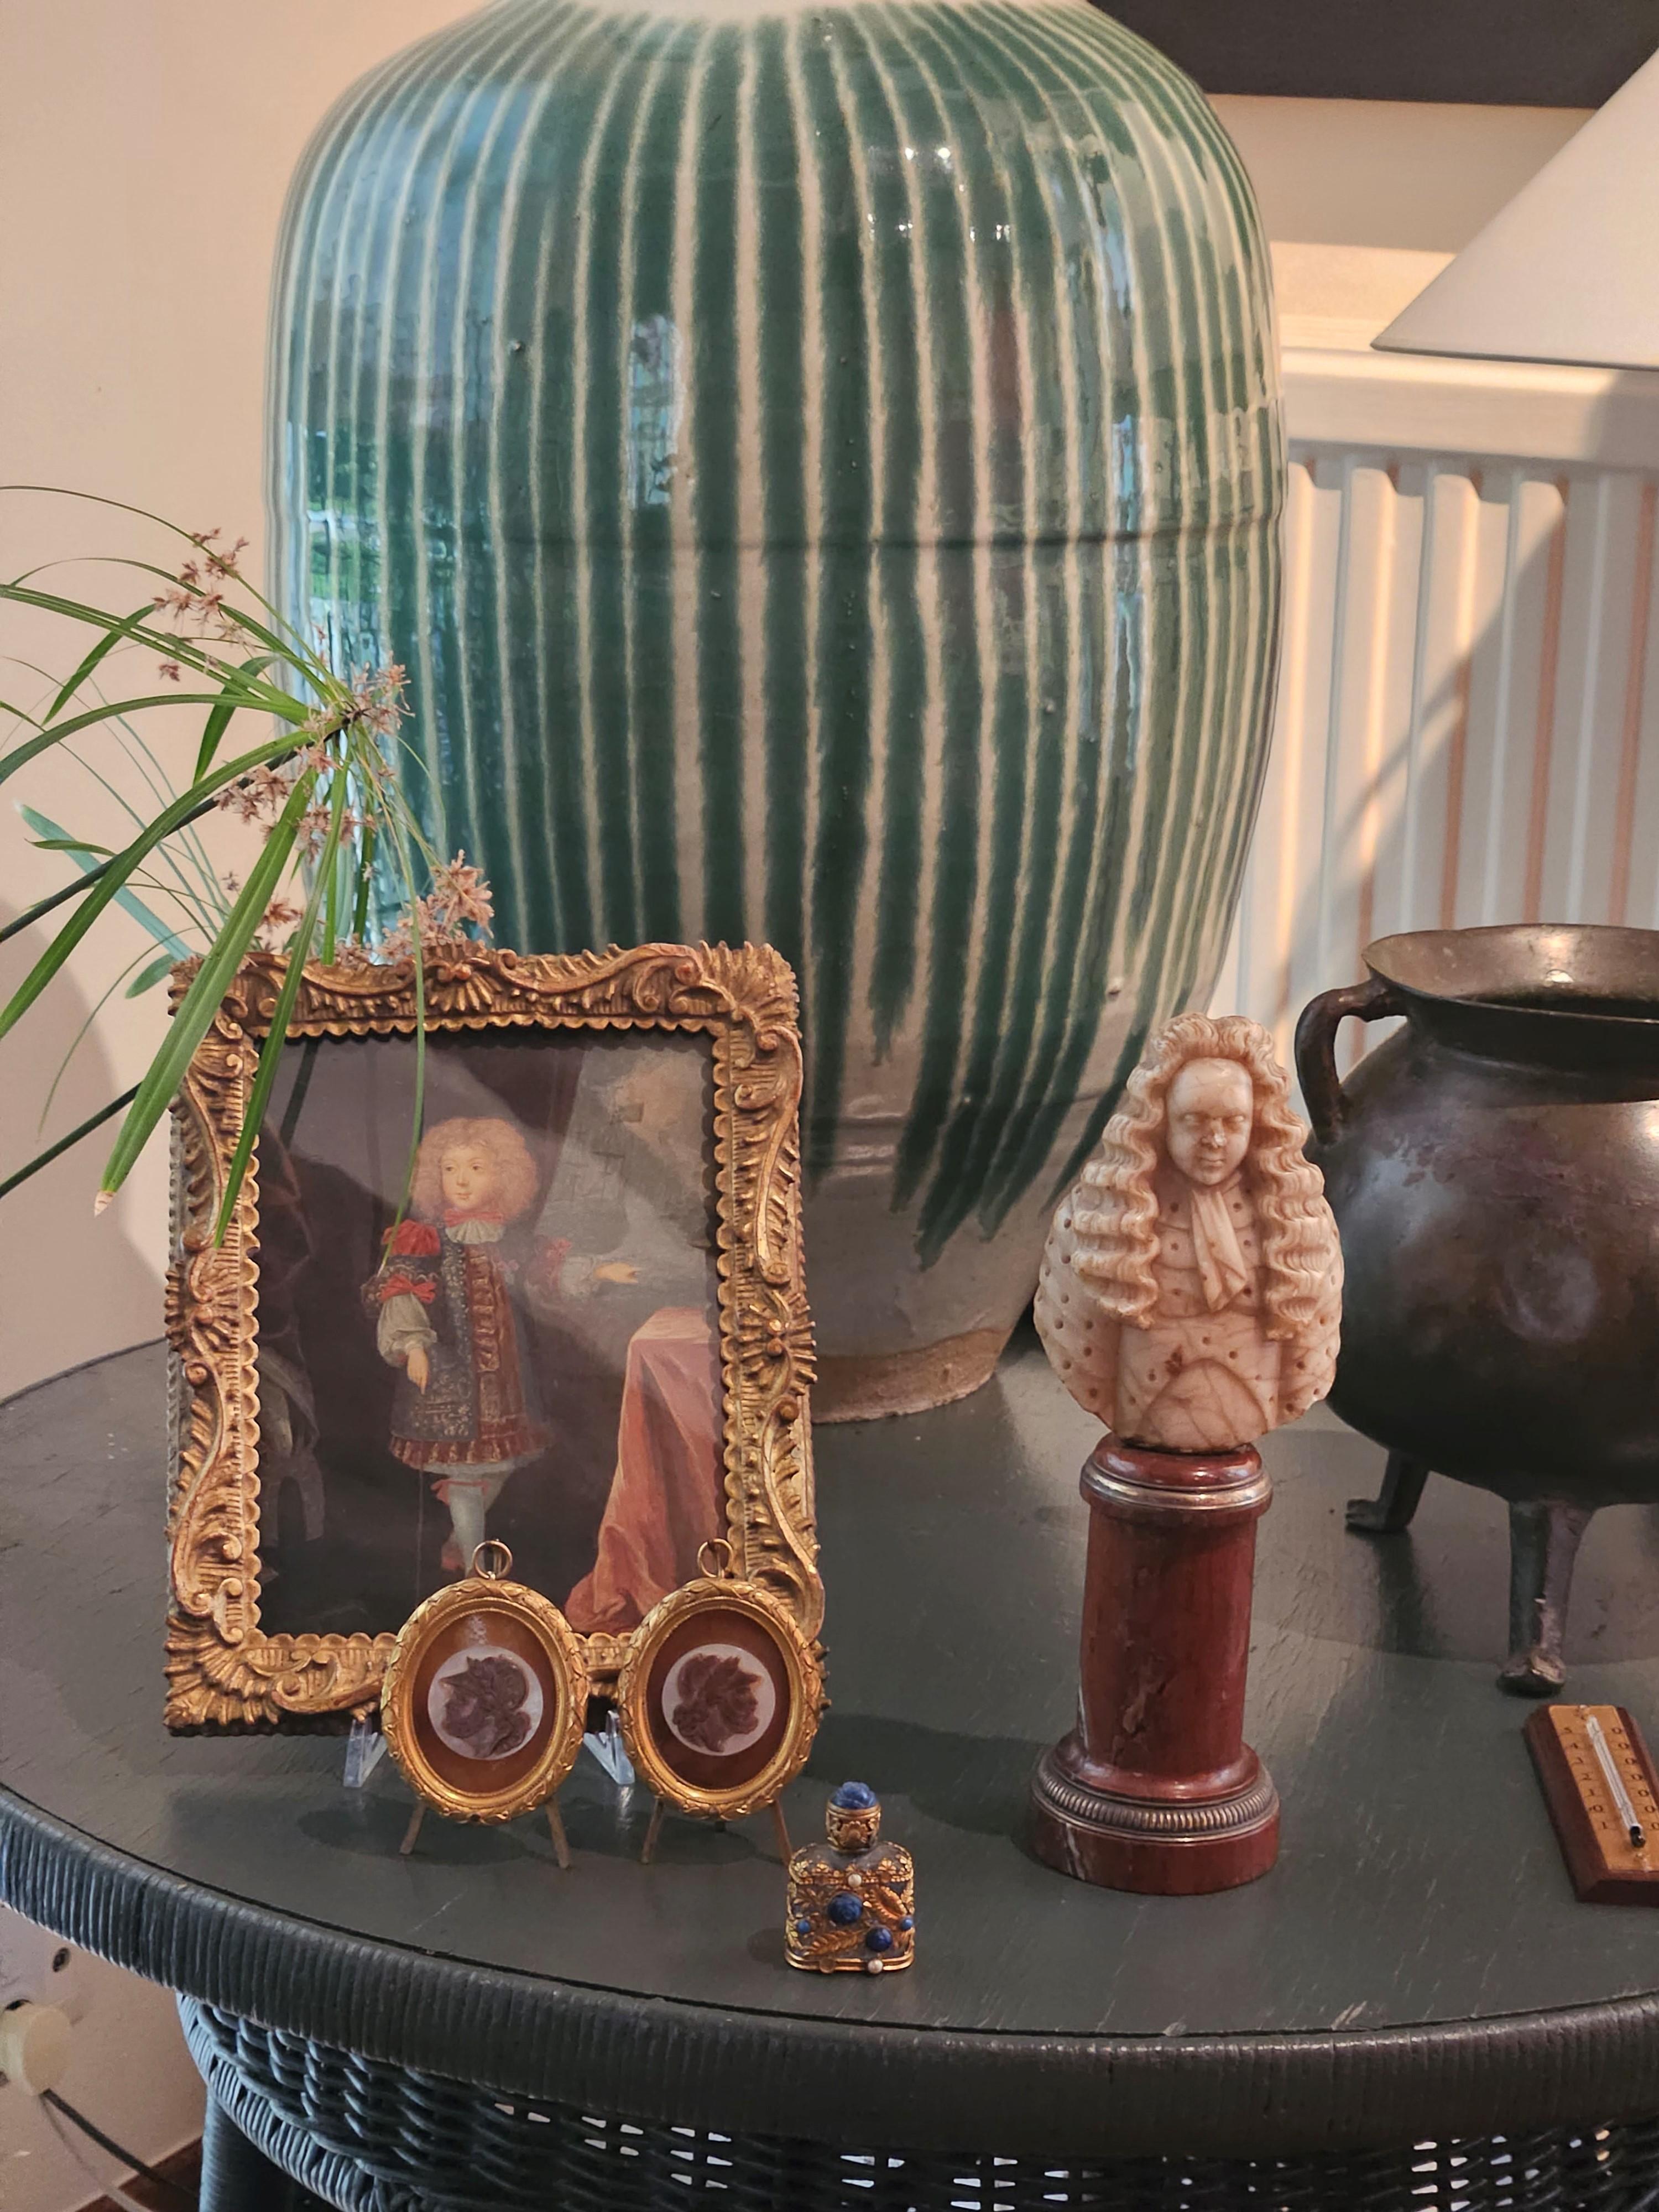 Paire de camées anciens en agate sur nacre sur corne dans un cadre en laiton doré de style Louis XIV.

Provenance : Collection vente YSL